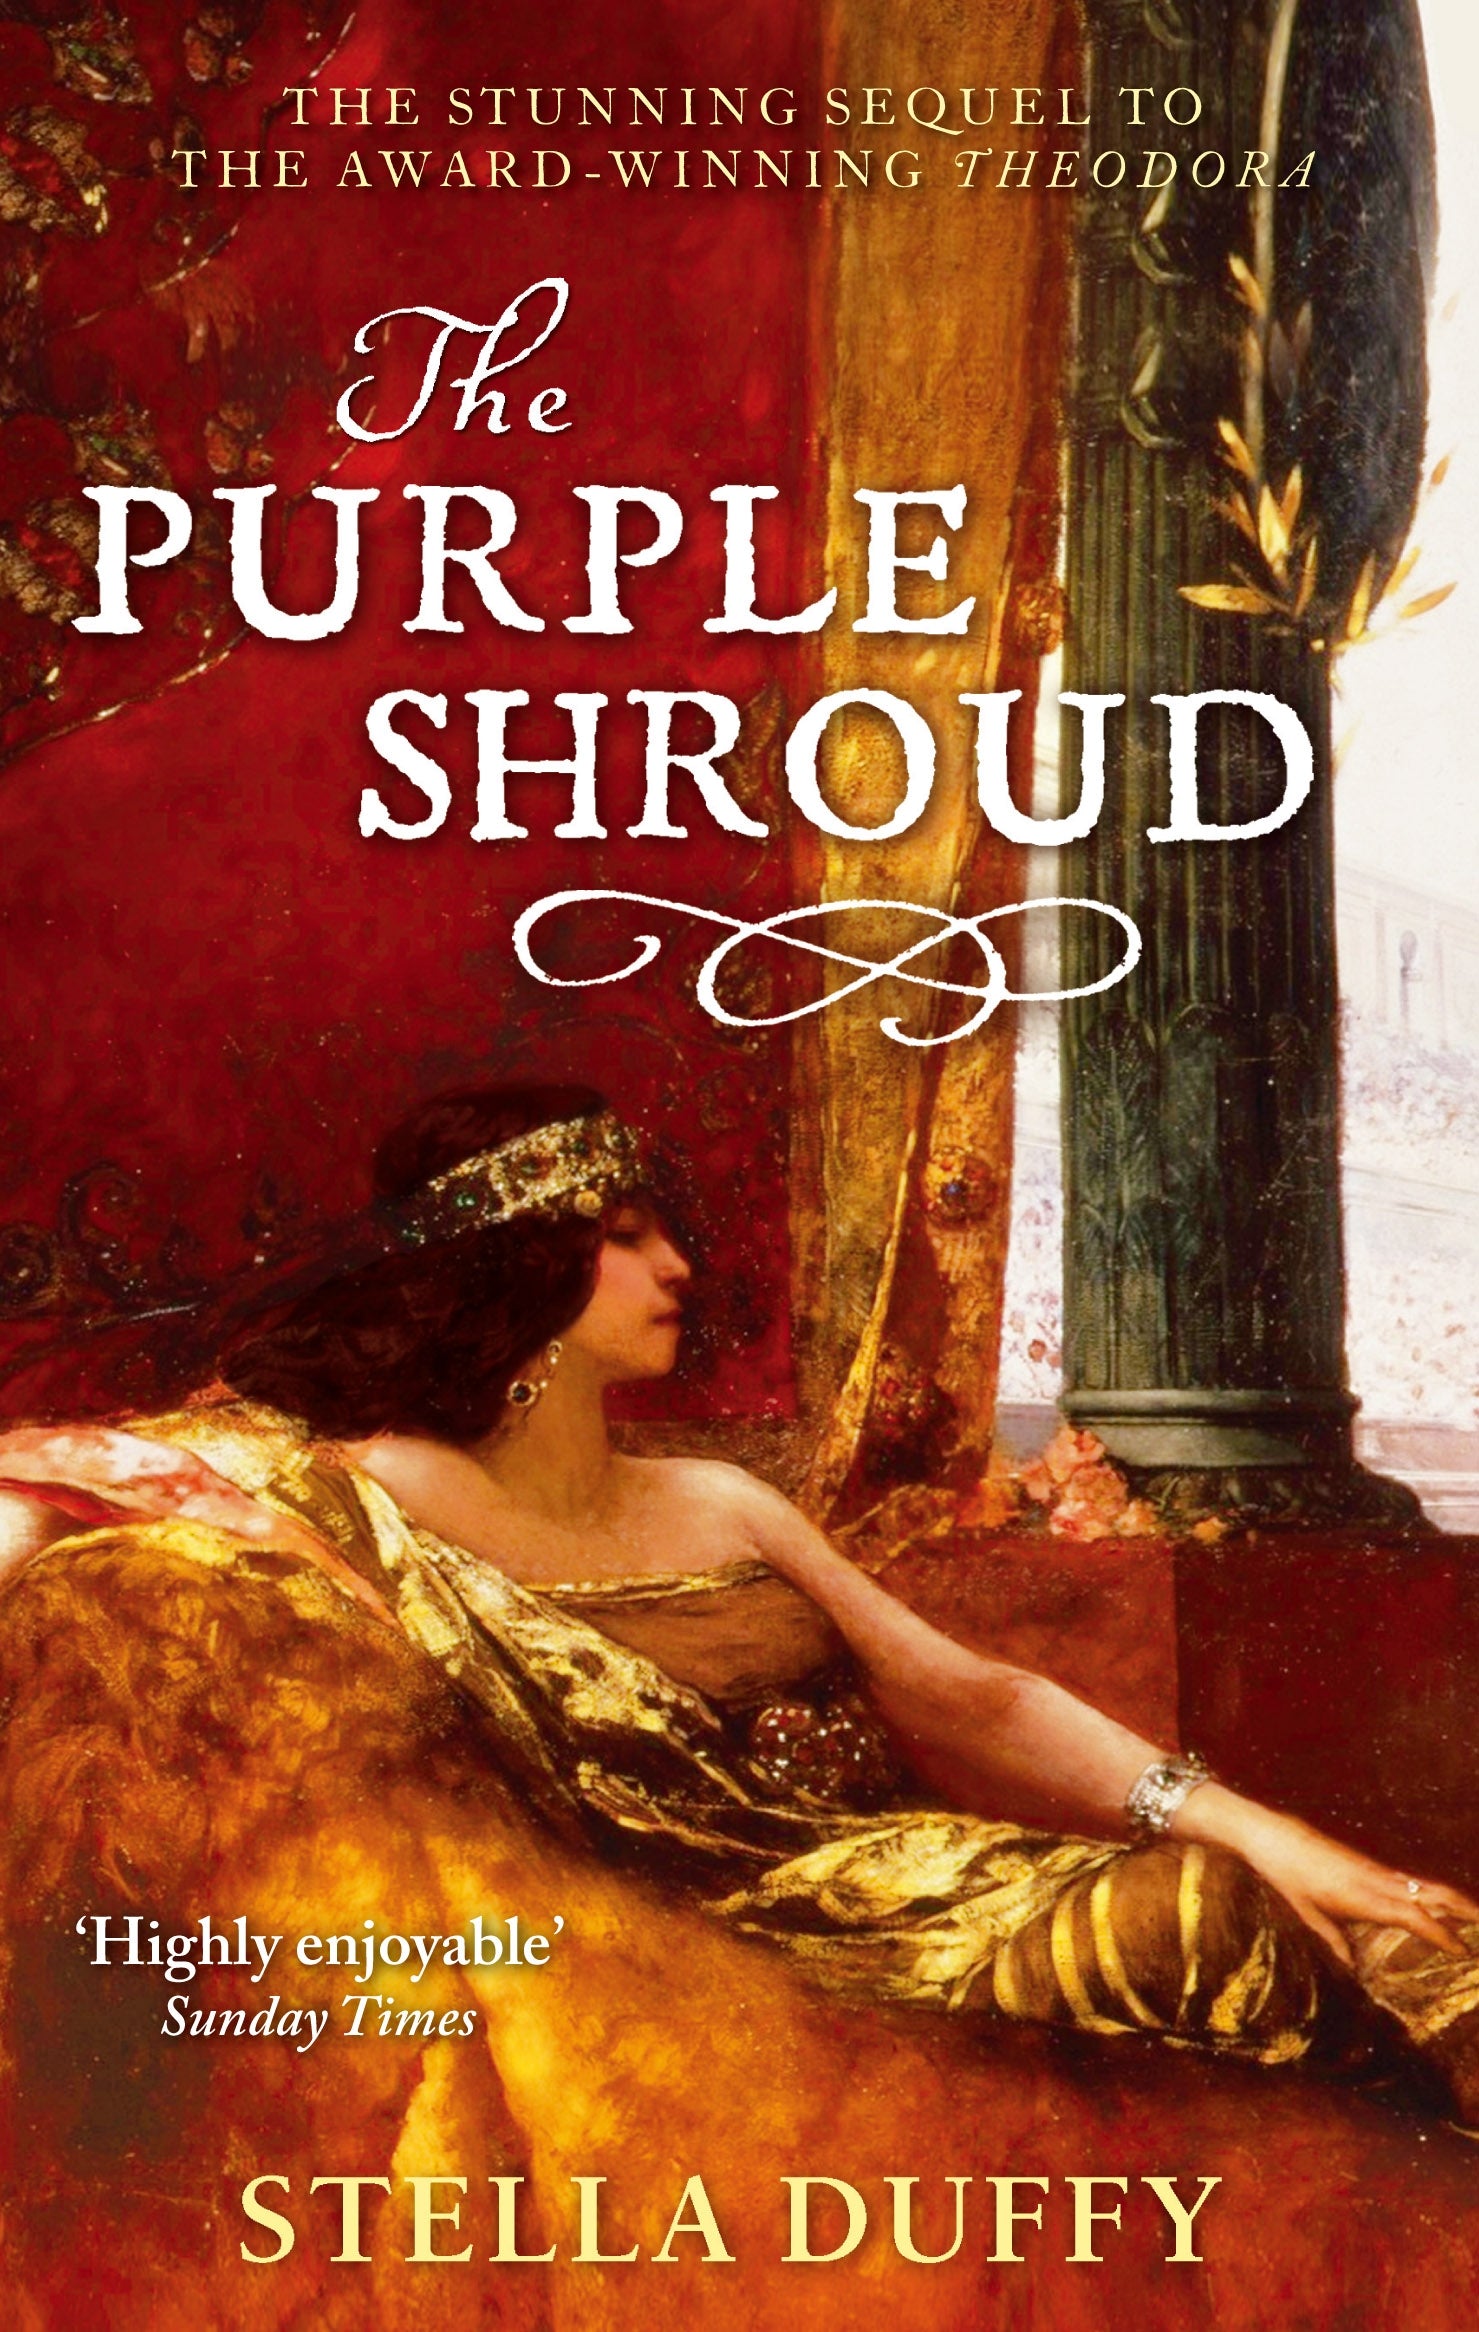 The Purple Shroud by Stella Duffy